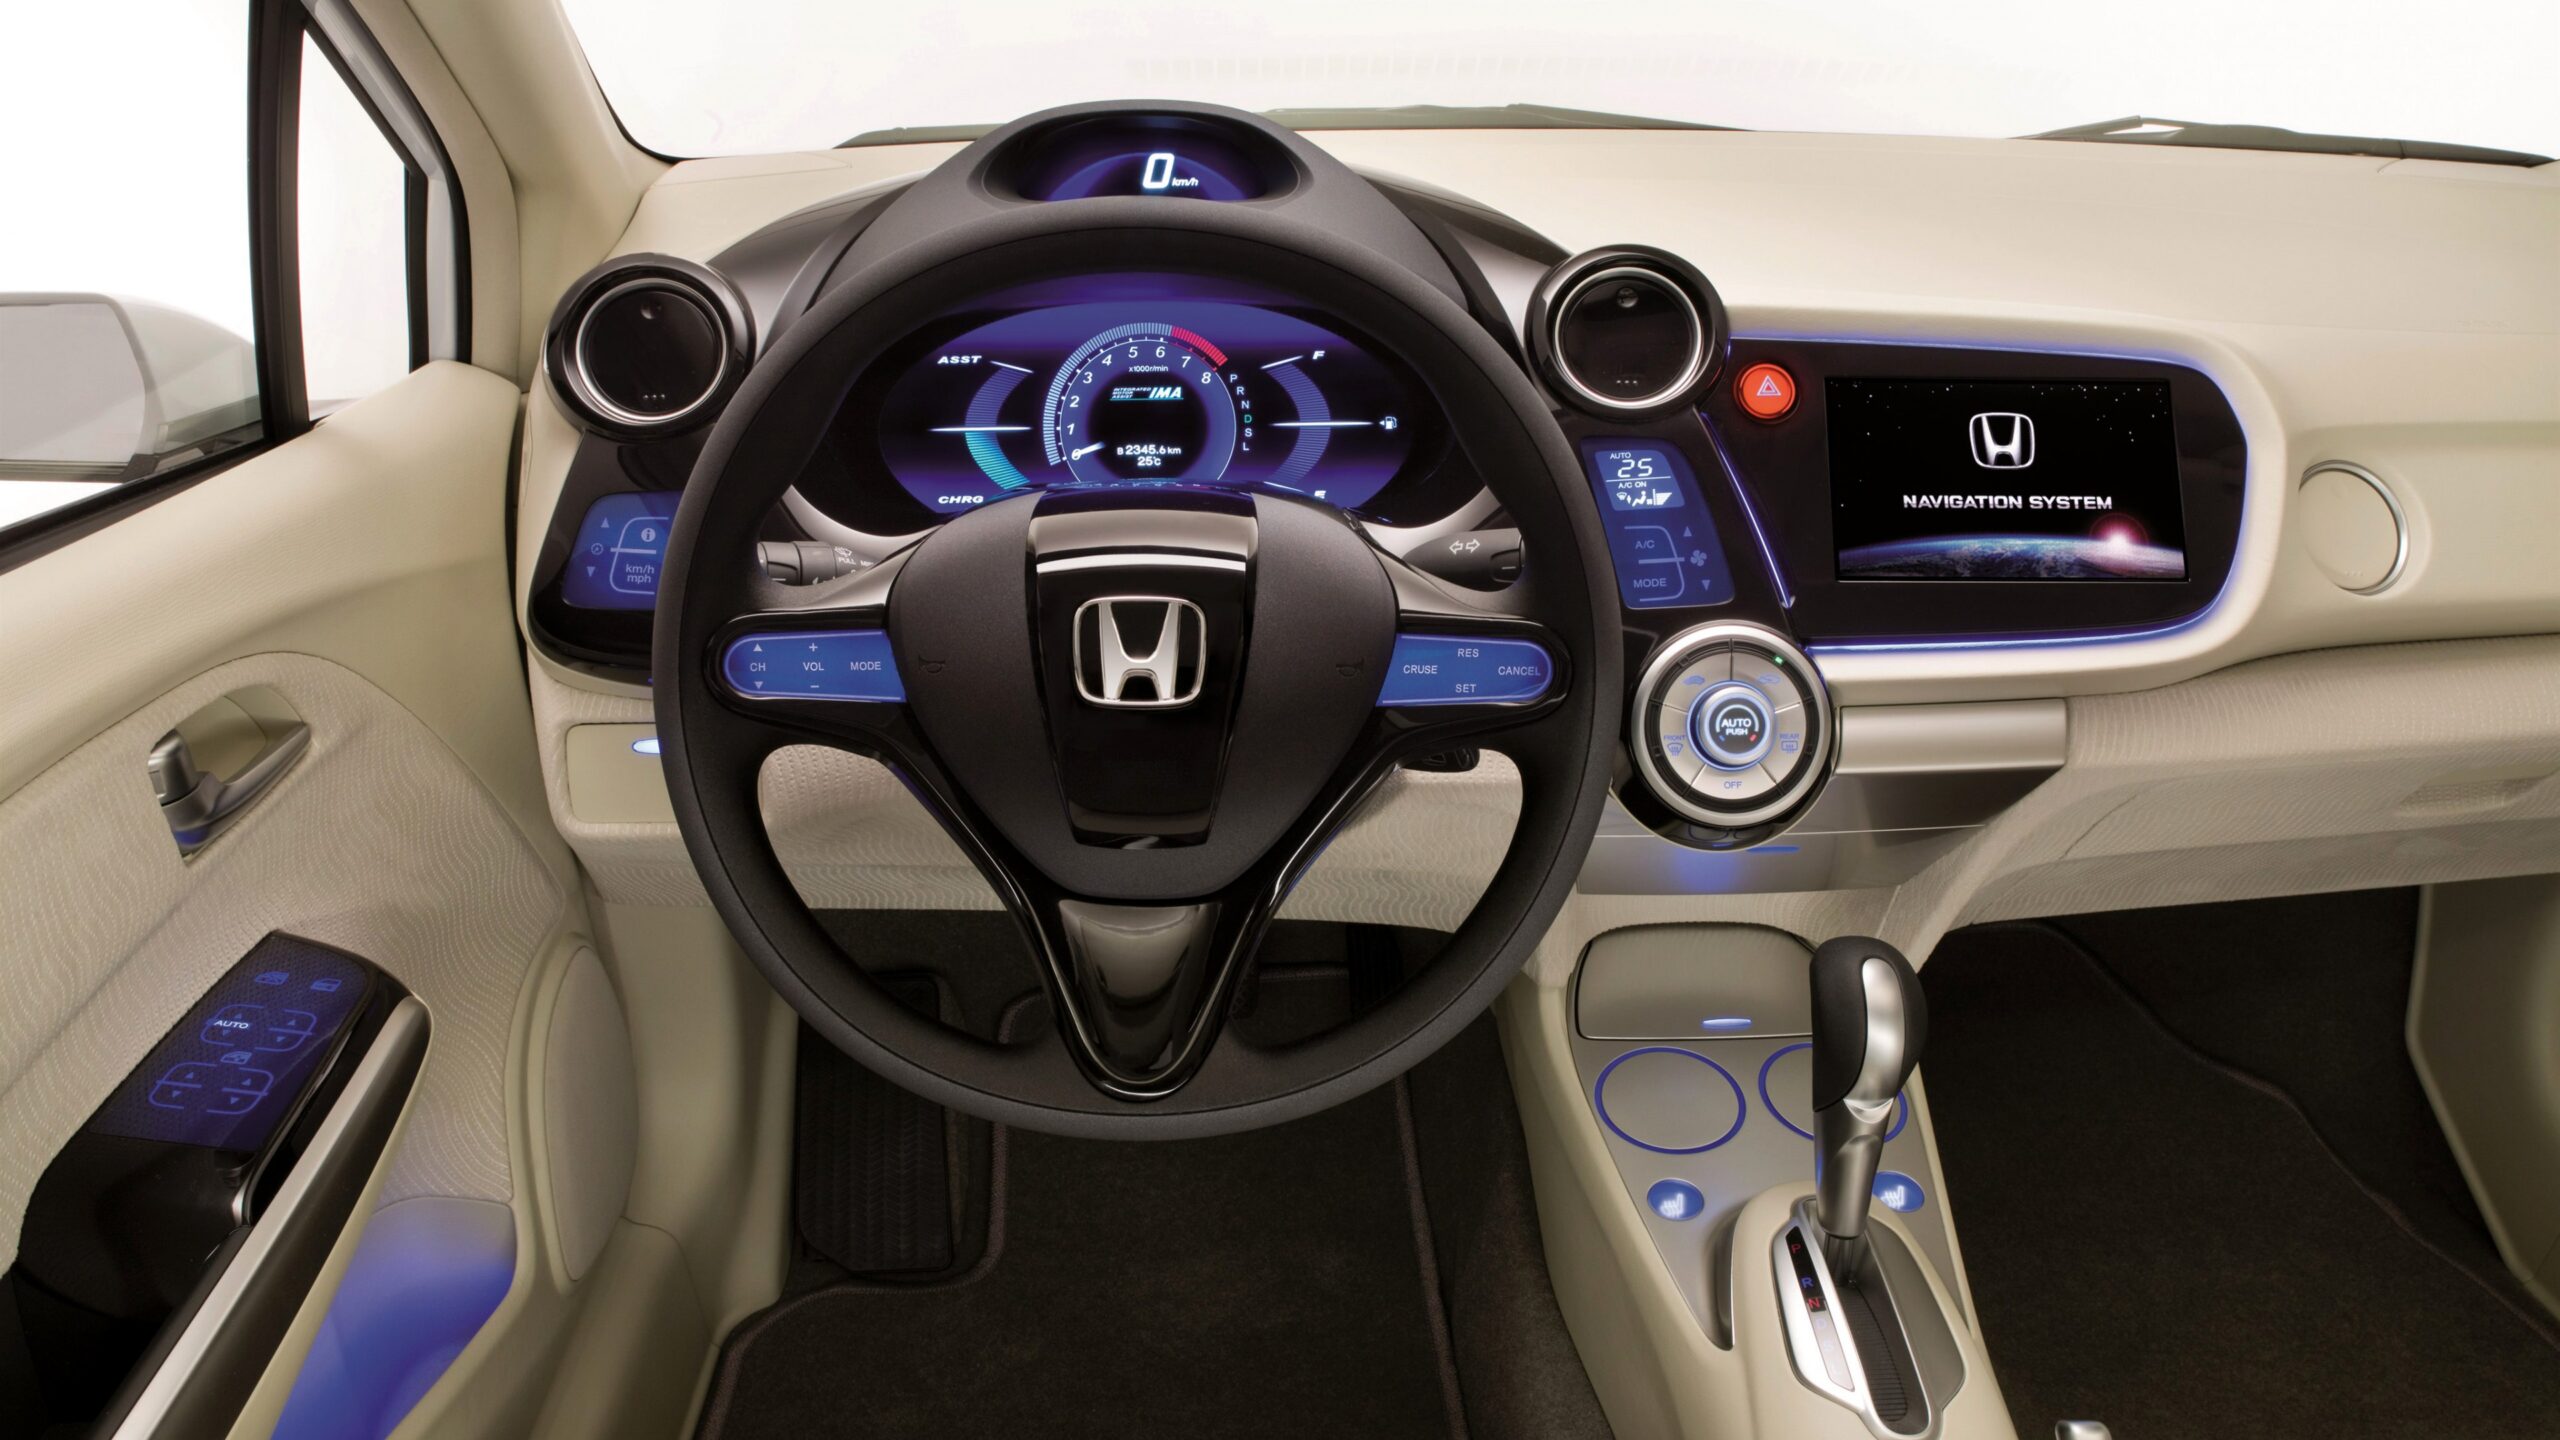 Chi tiết nội thất xe Honda Insight sang trọng 1